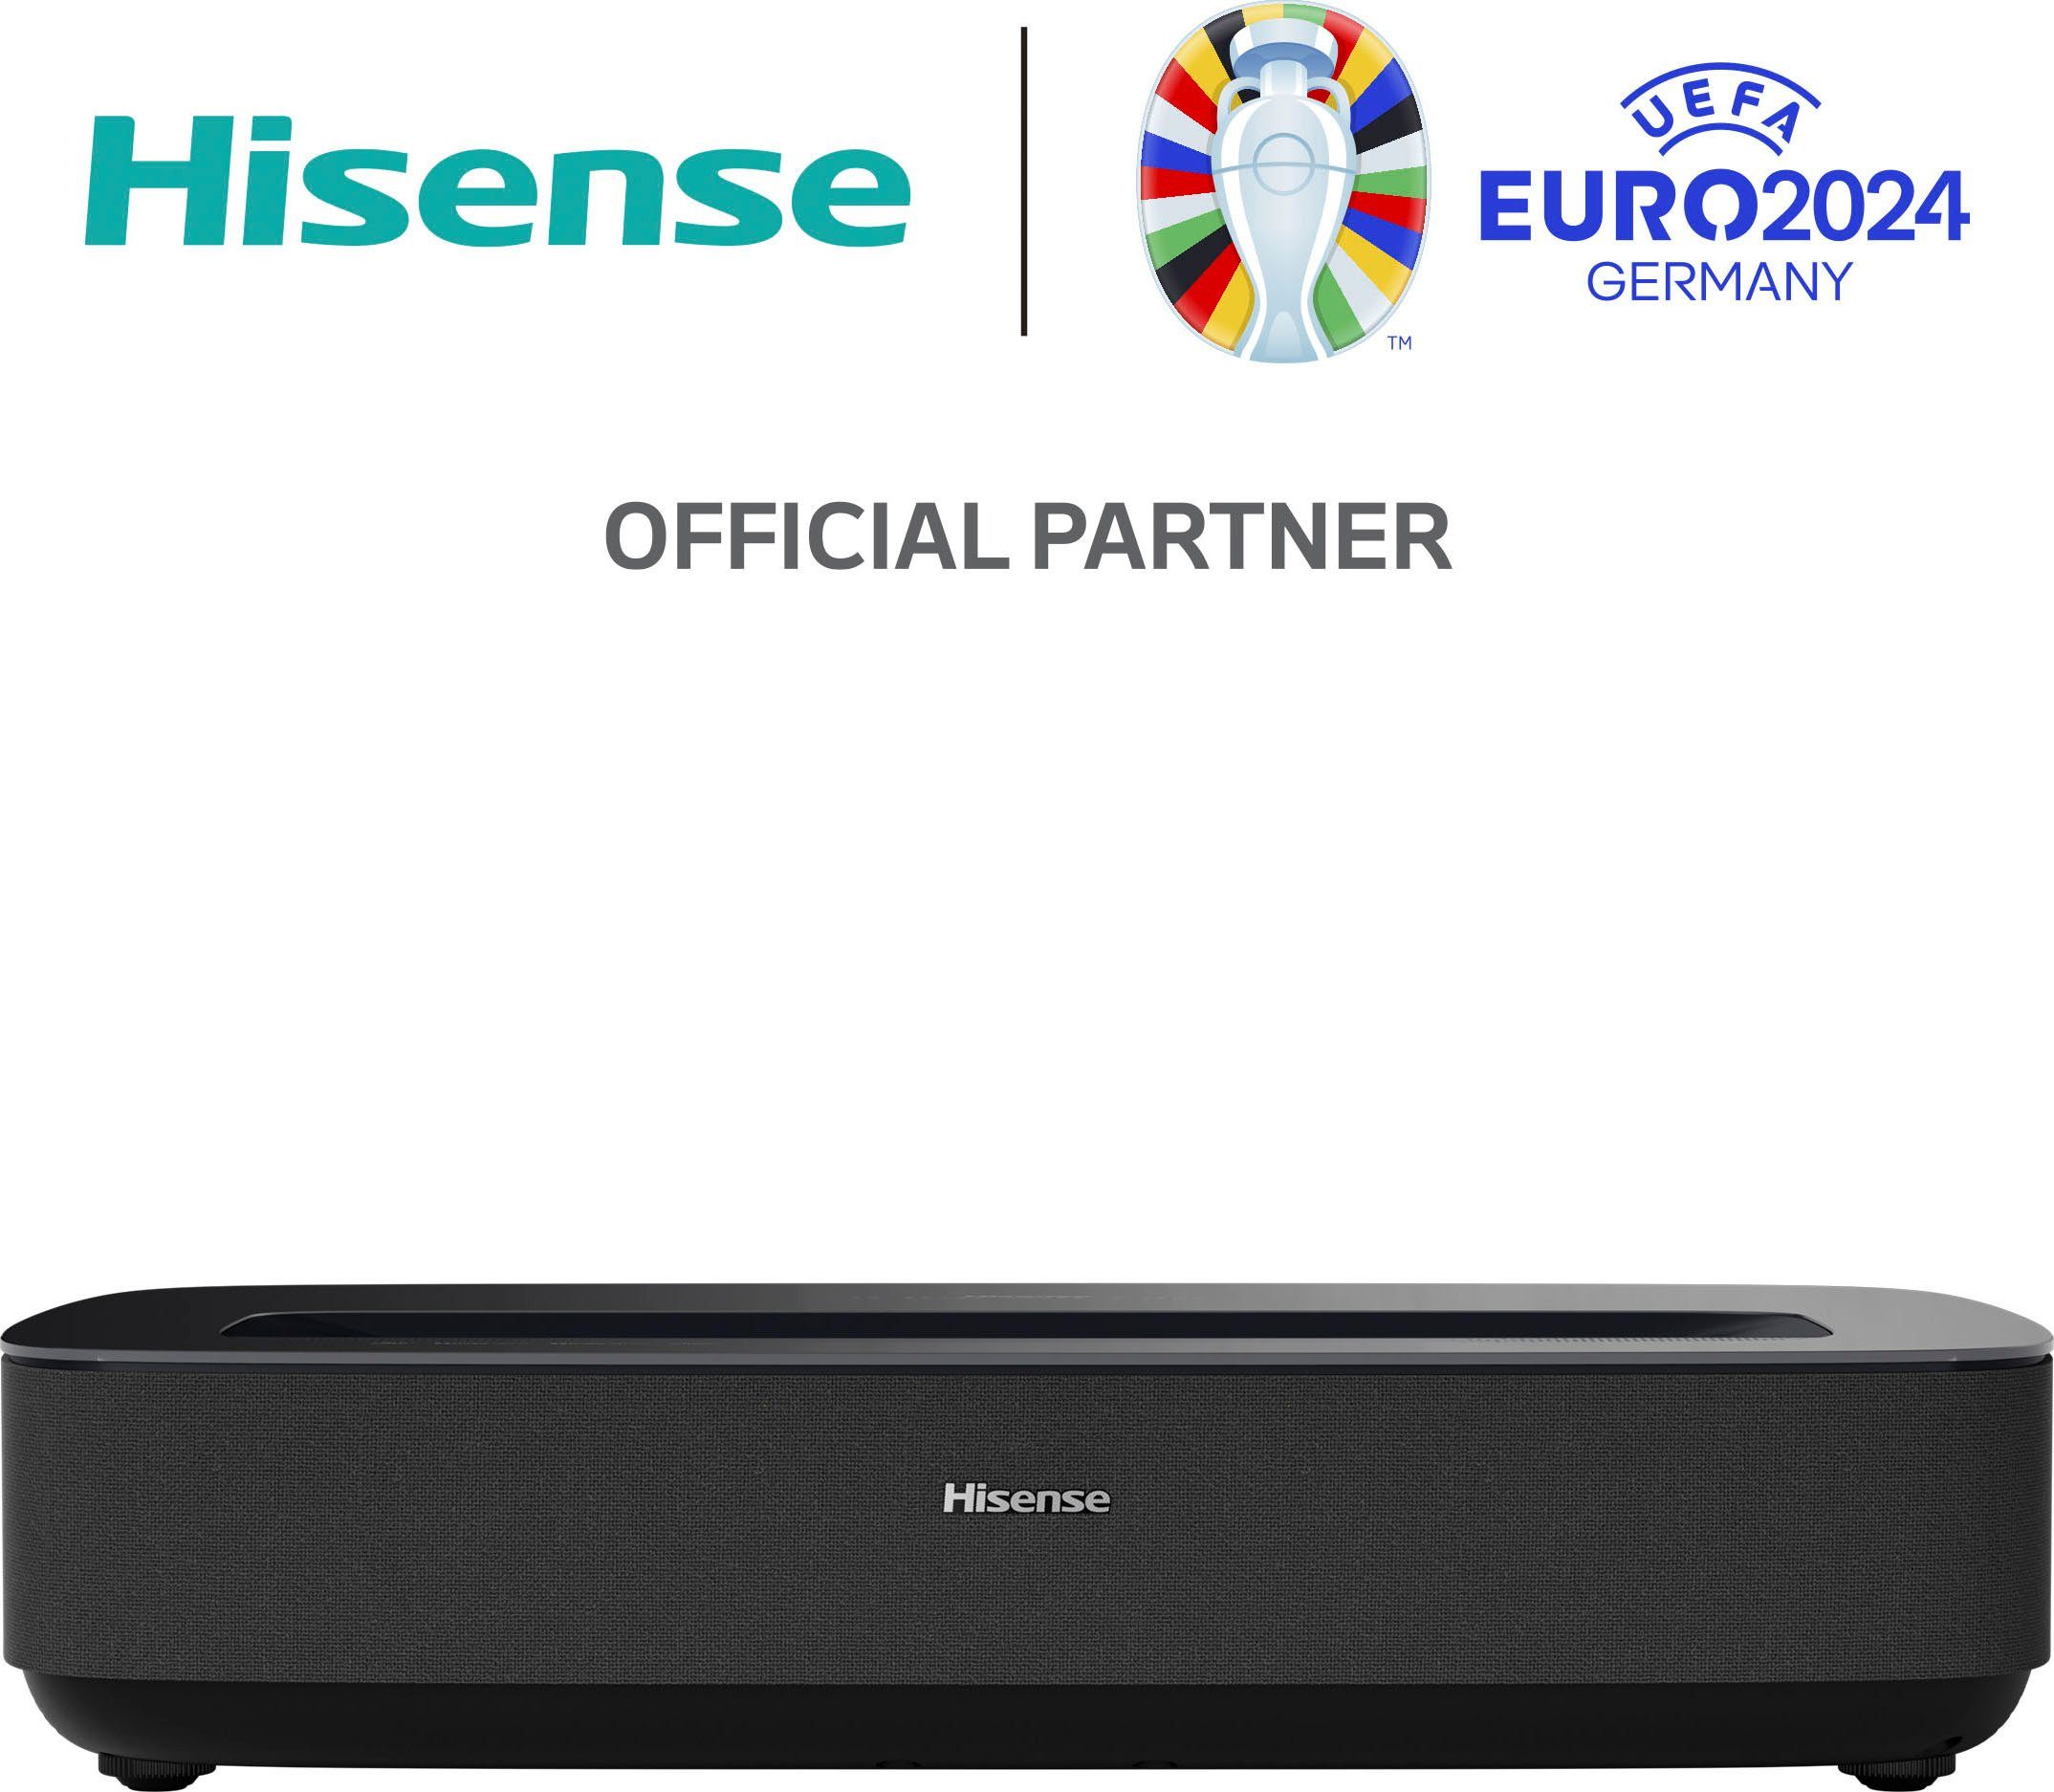 Hisense PL1SE Beamer (2100 lm, 3840 x 2160 px), Detailreiche Bilder in 4K  Ultra HD:Viermal so scharf wie Full HD | Heimkino-Beamer